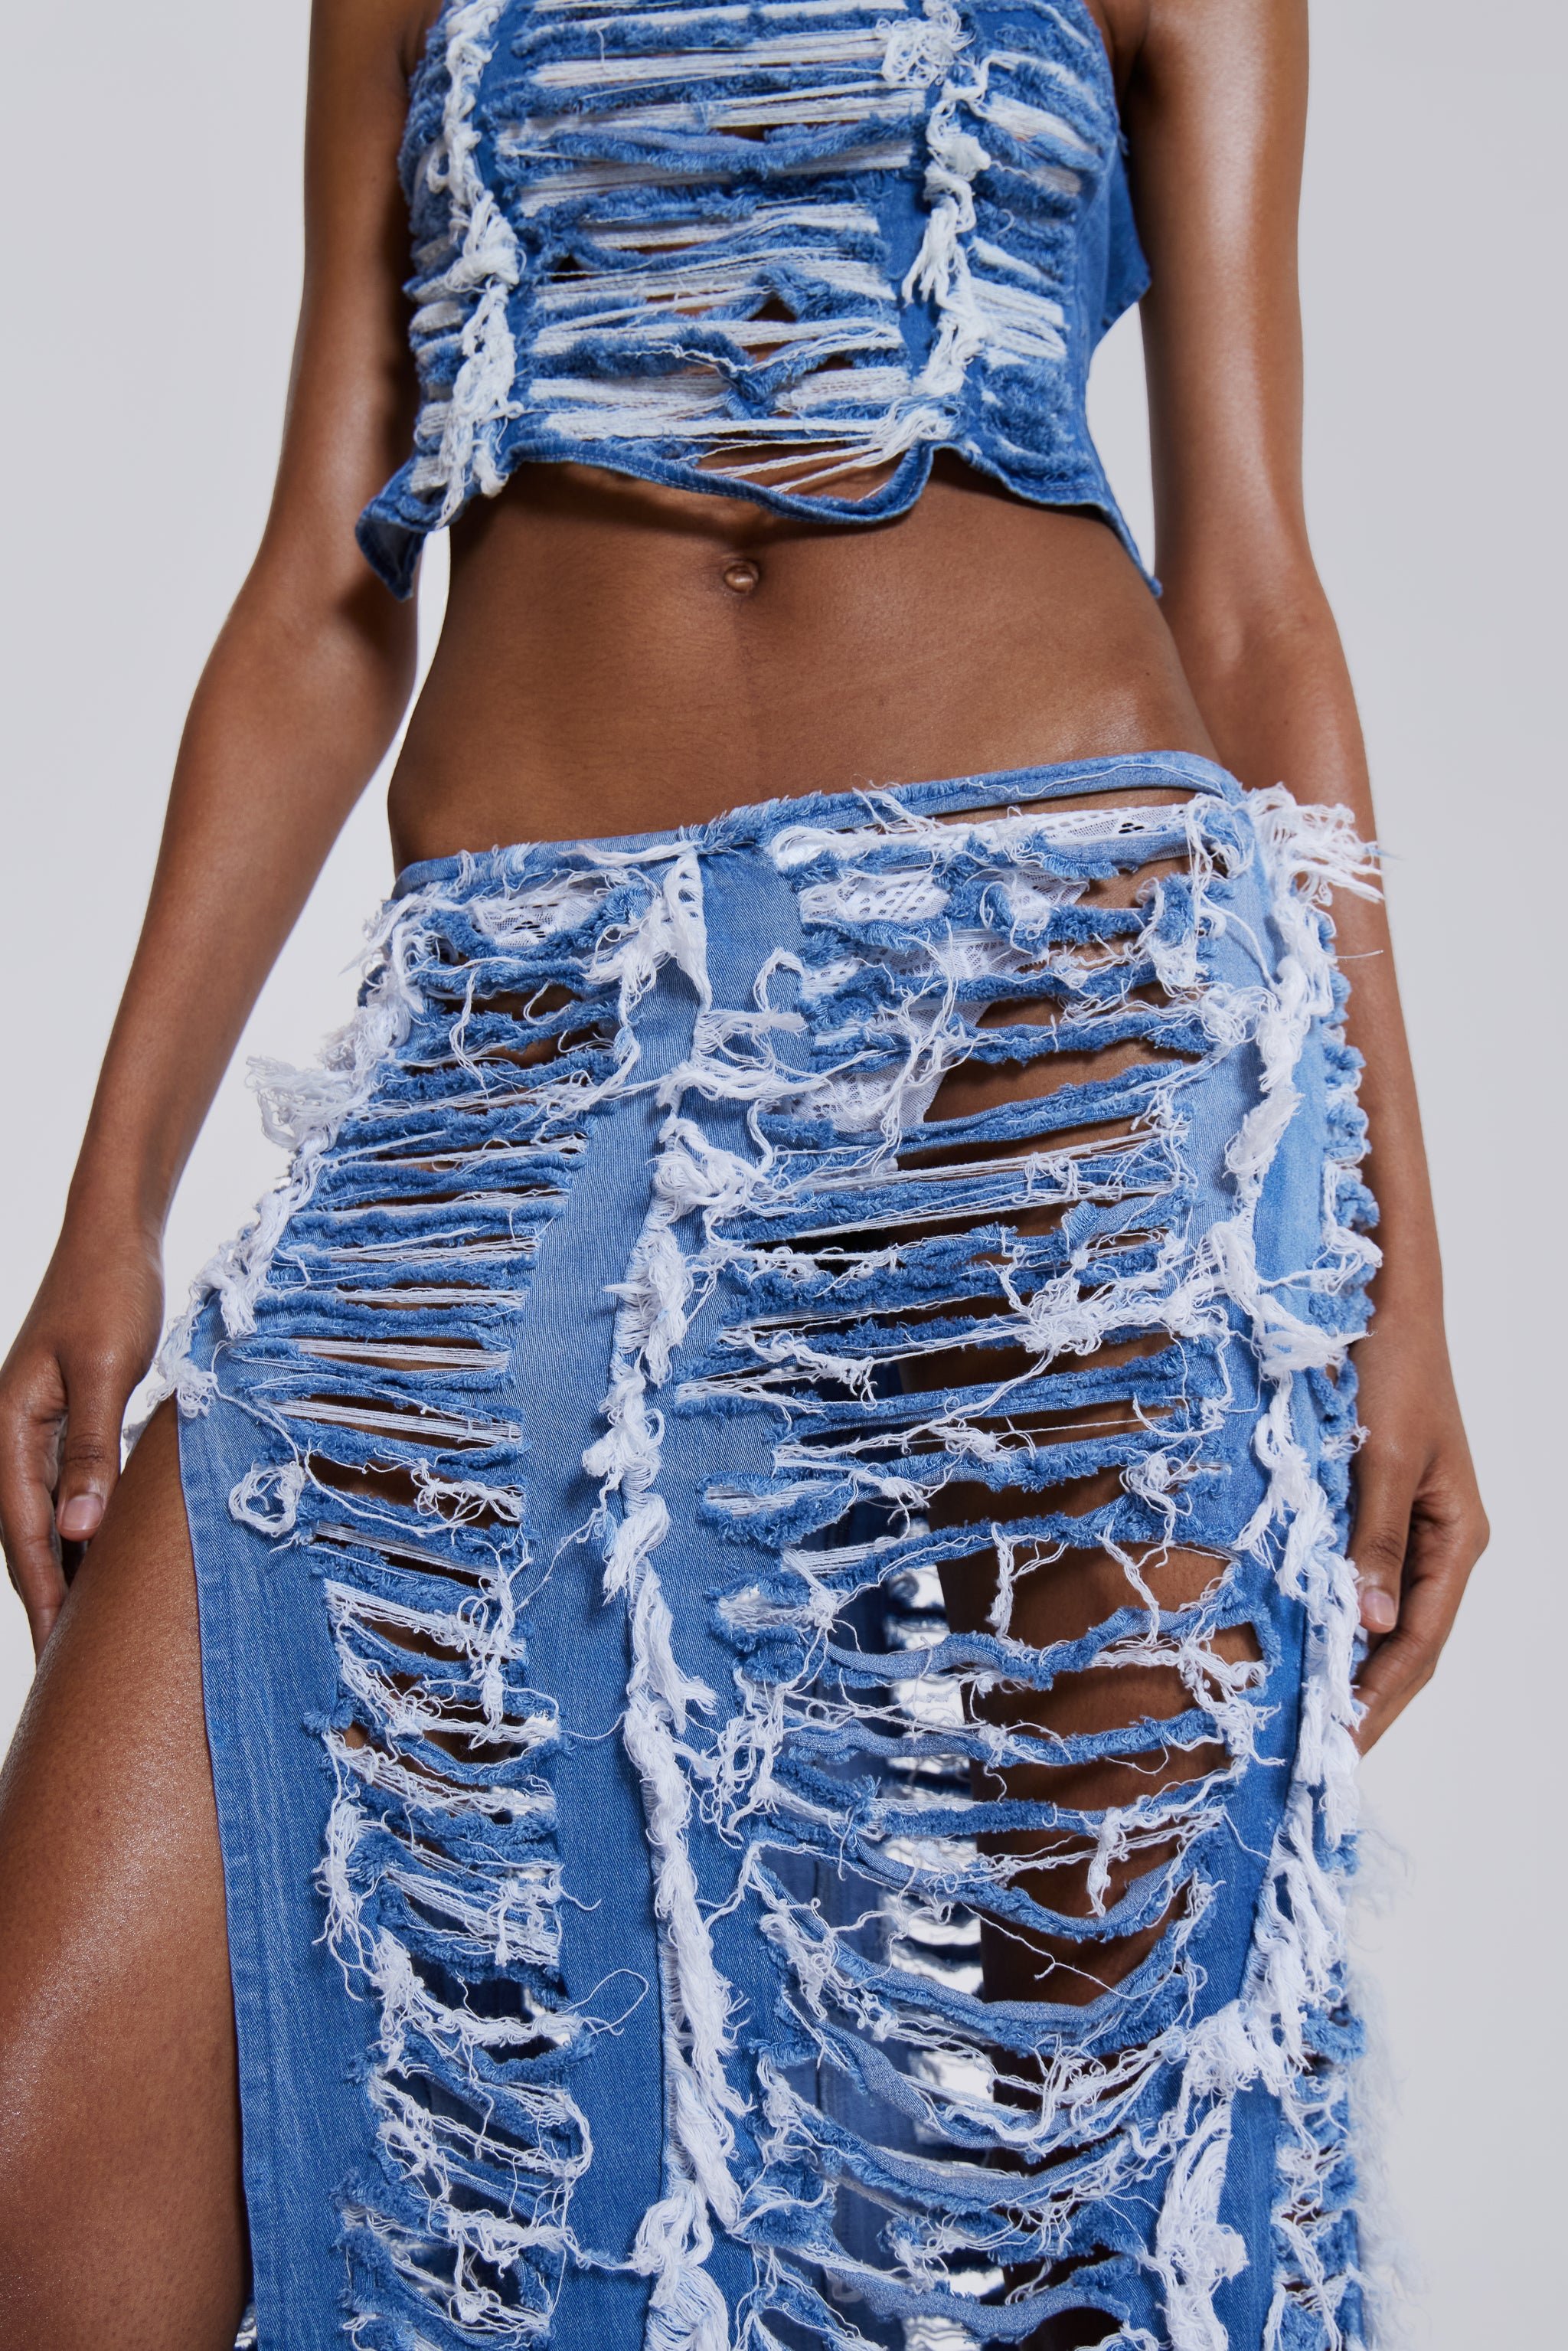 Shredded Denim Maxi Skirt